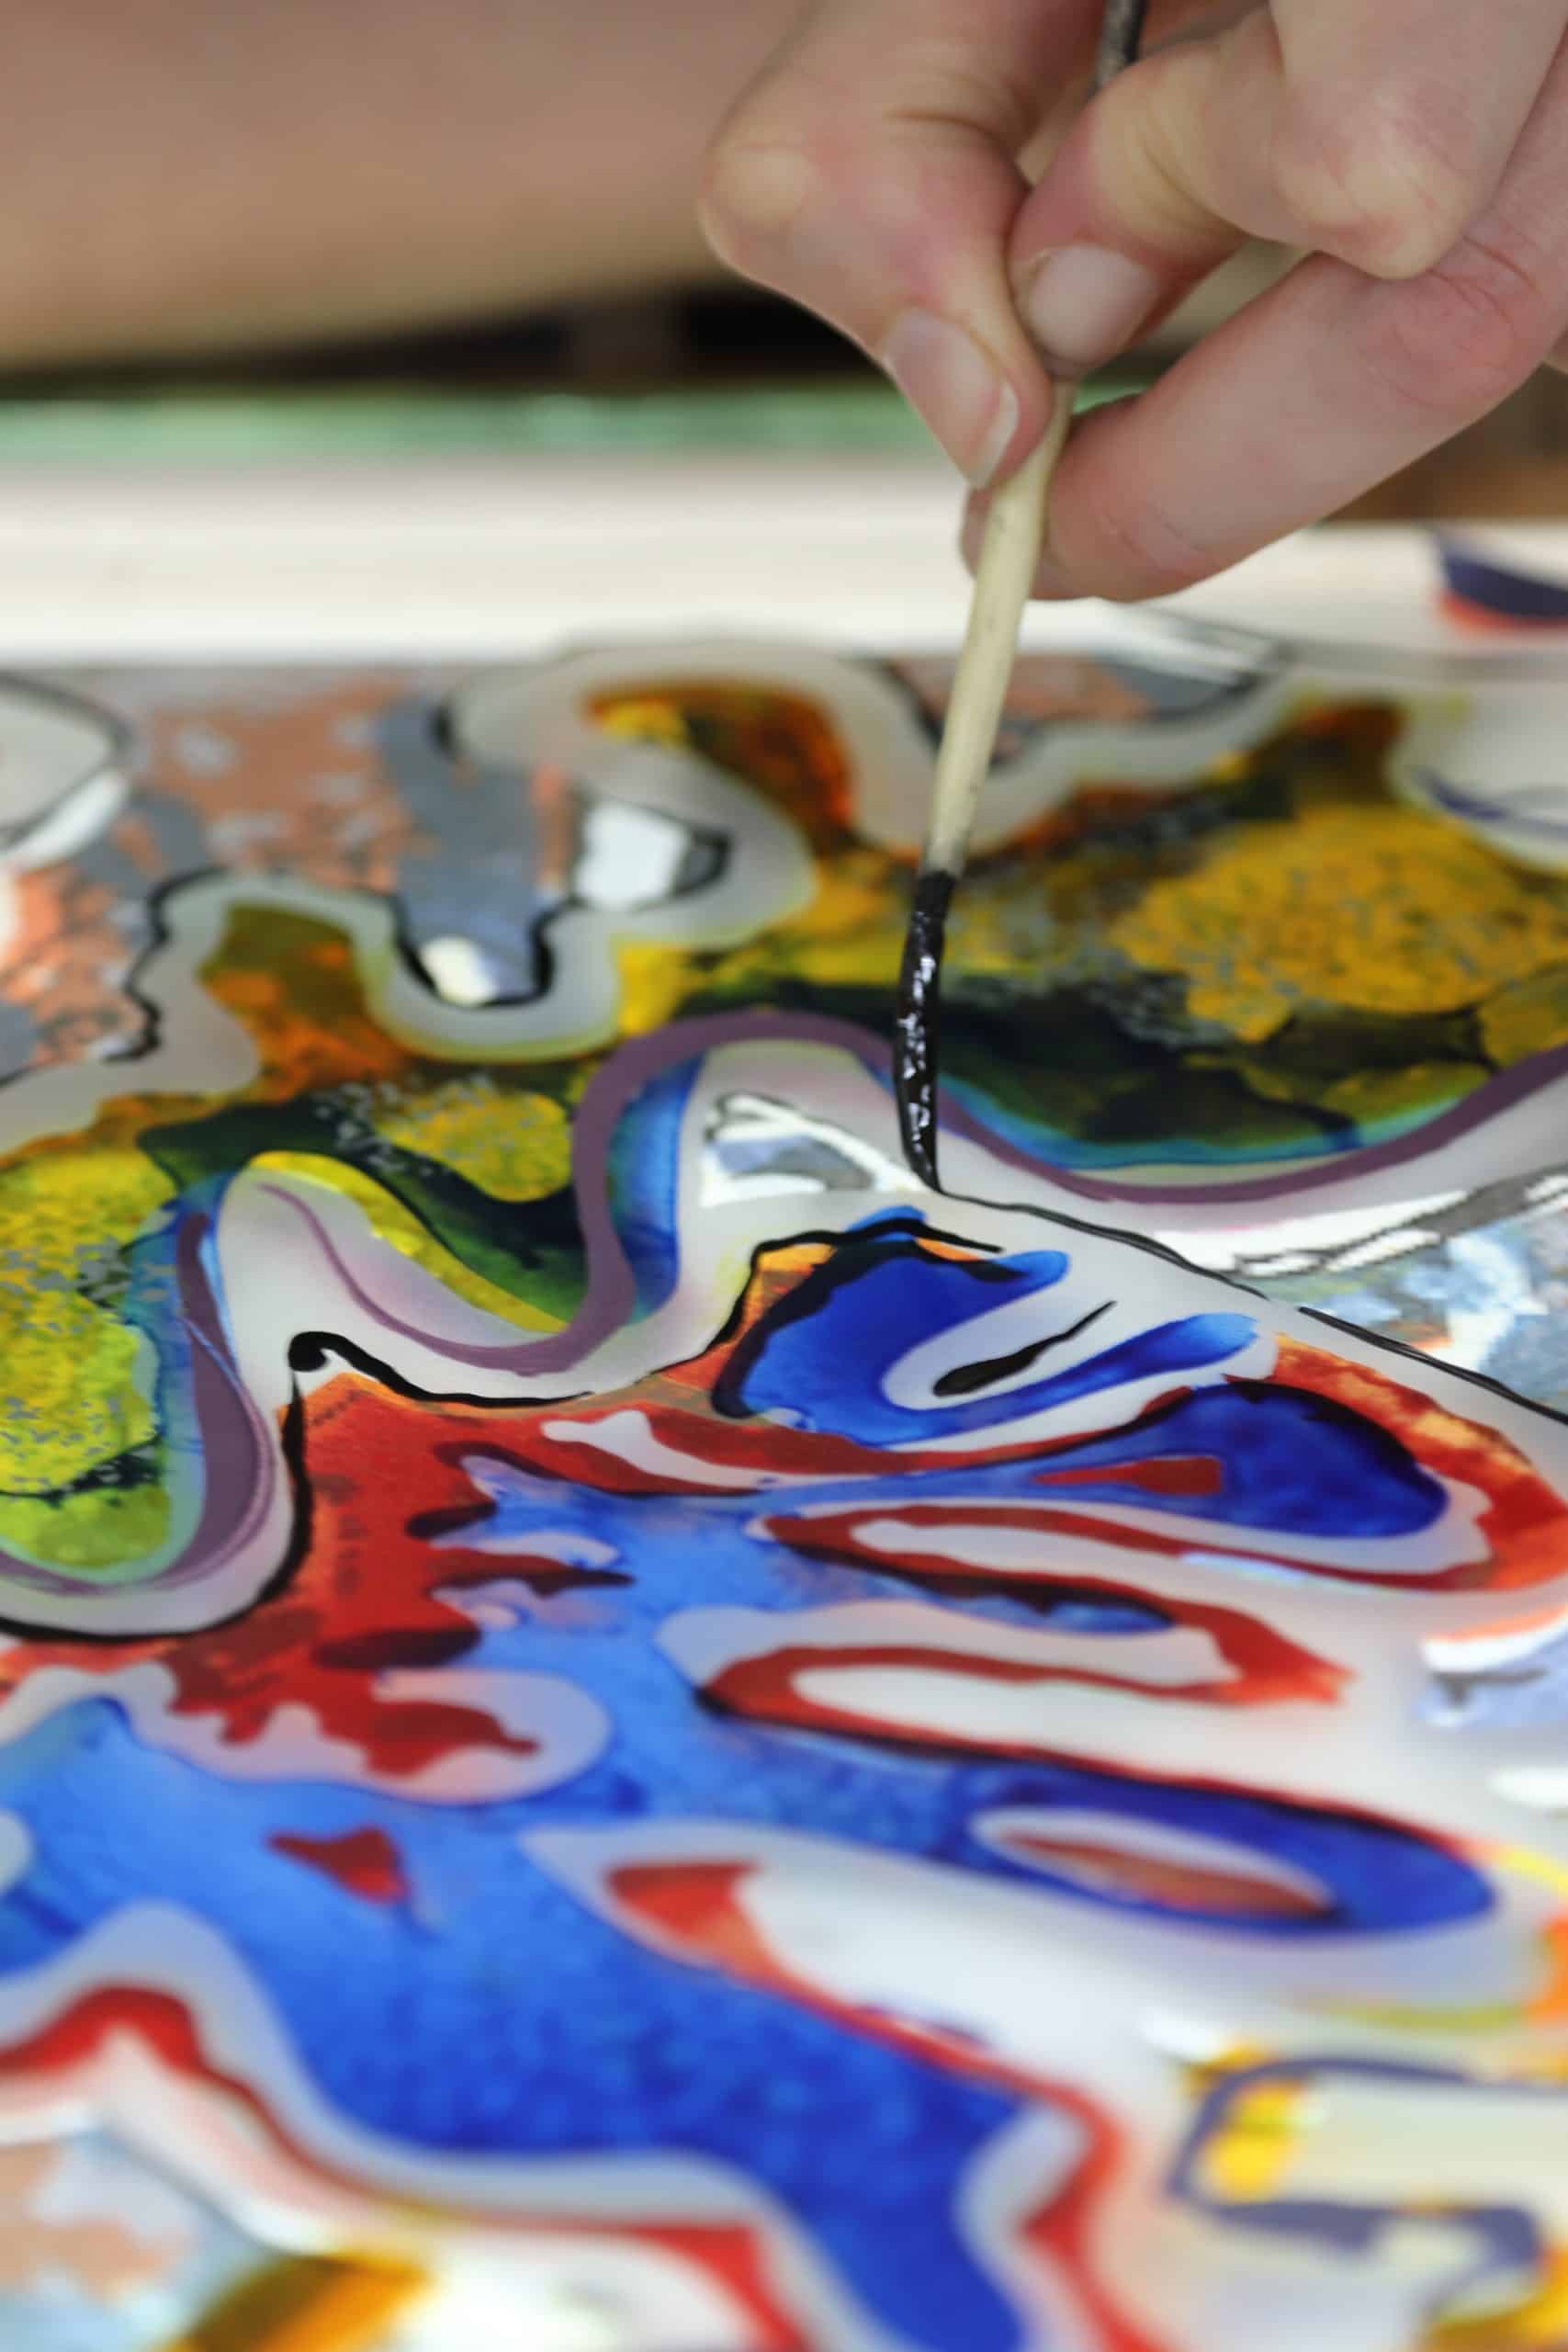 Hand bemalt mit Pinsel farbenfrohes, abstraktes Glaskunstwerk in Nahaufnahme.